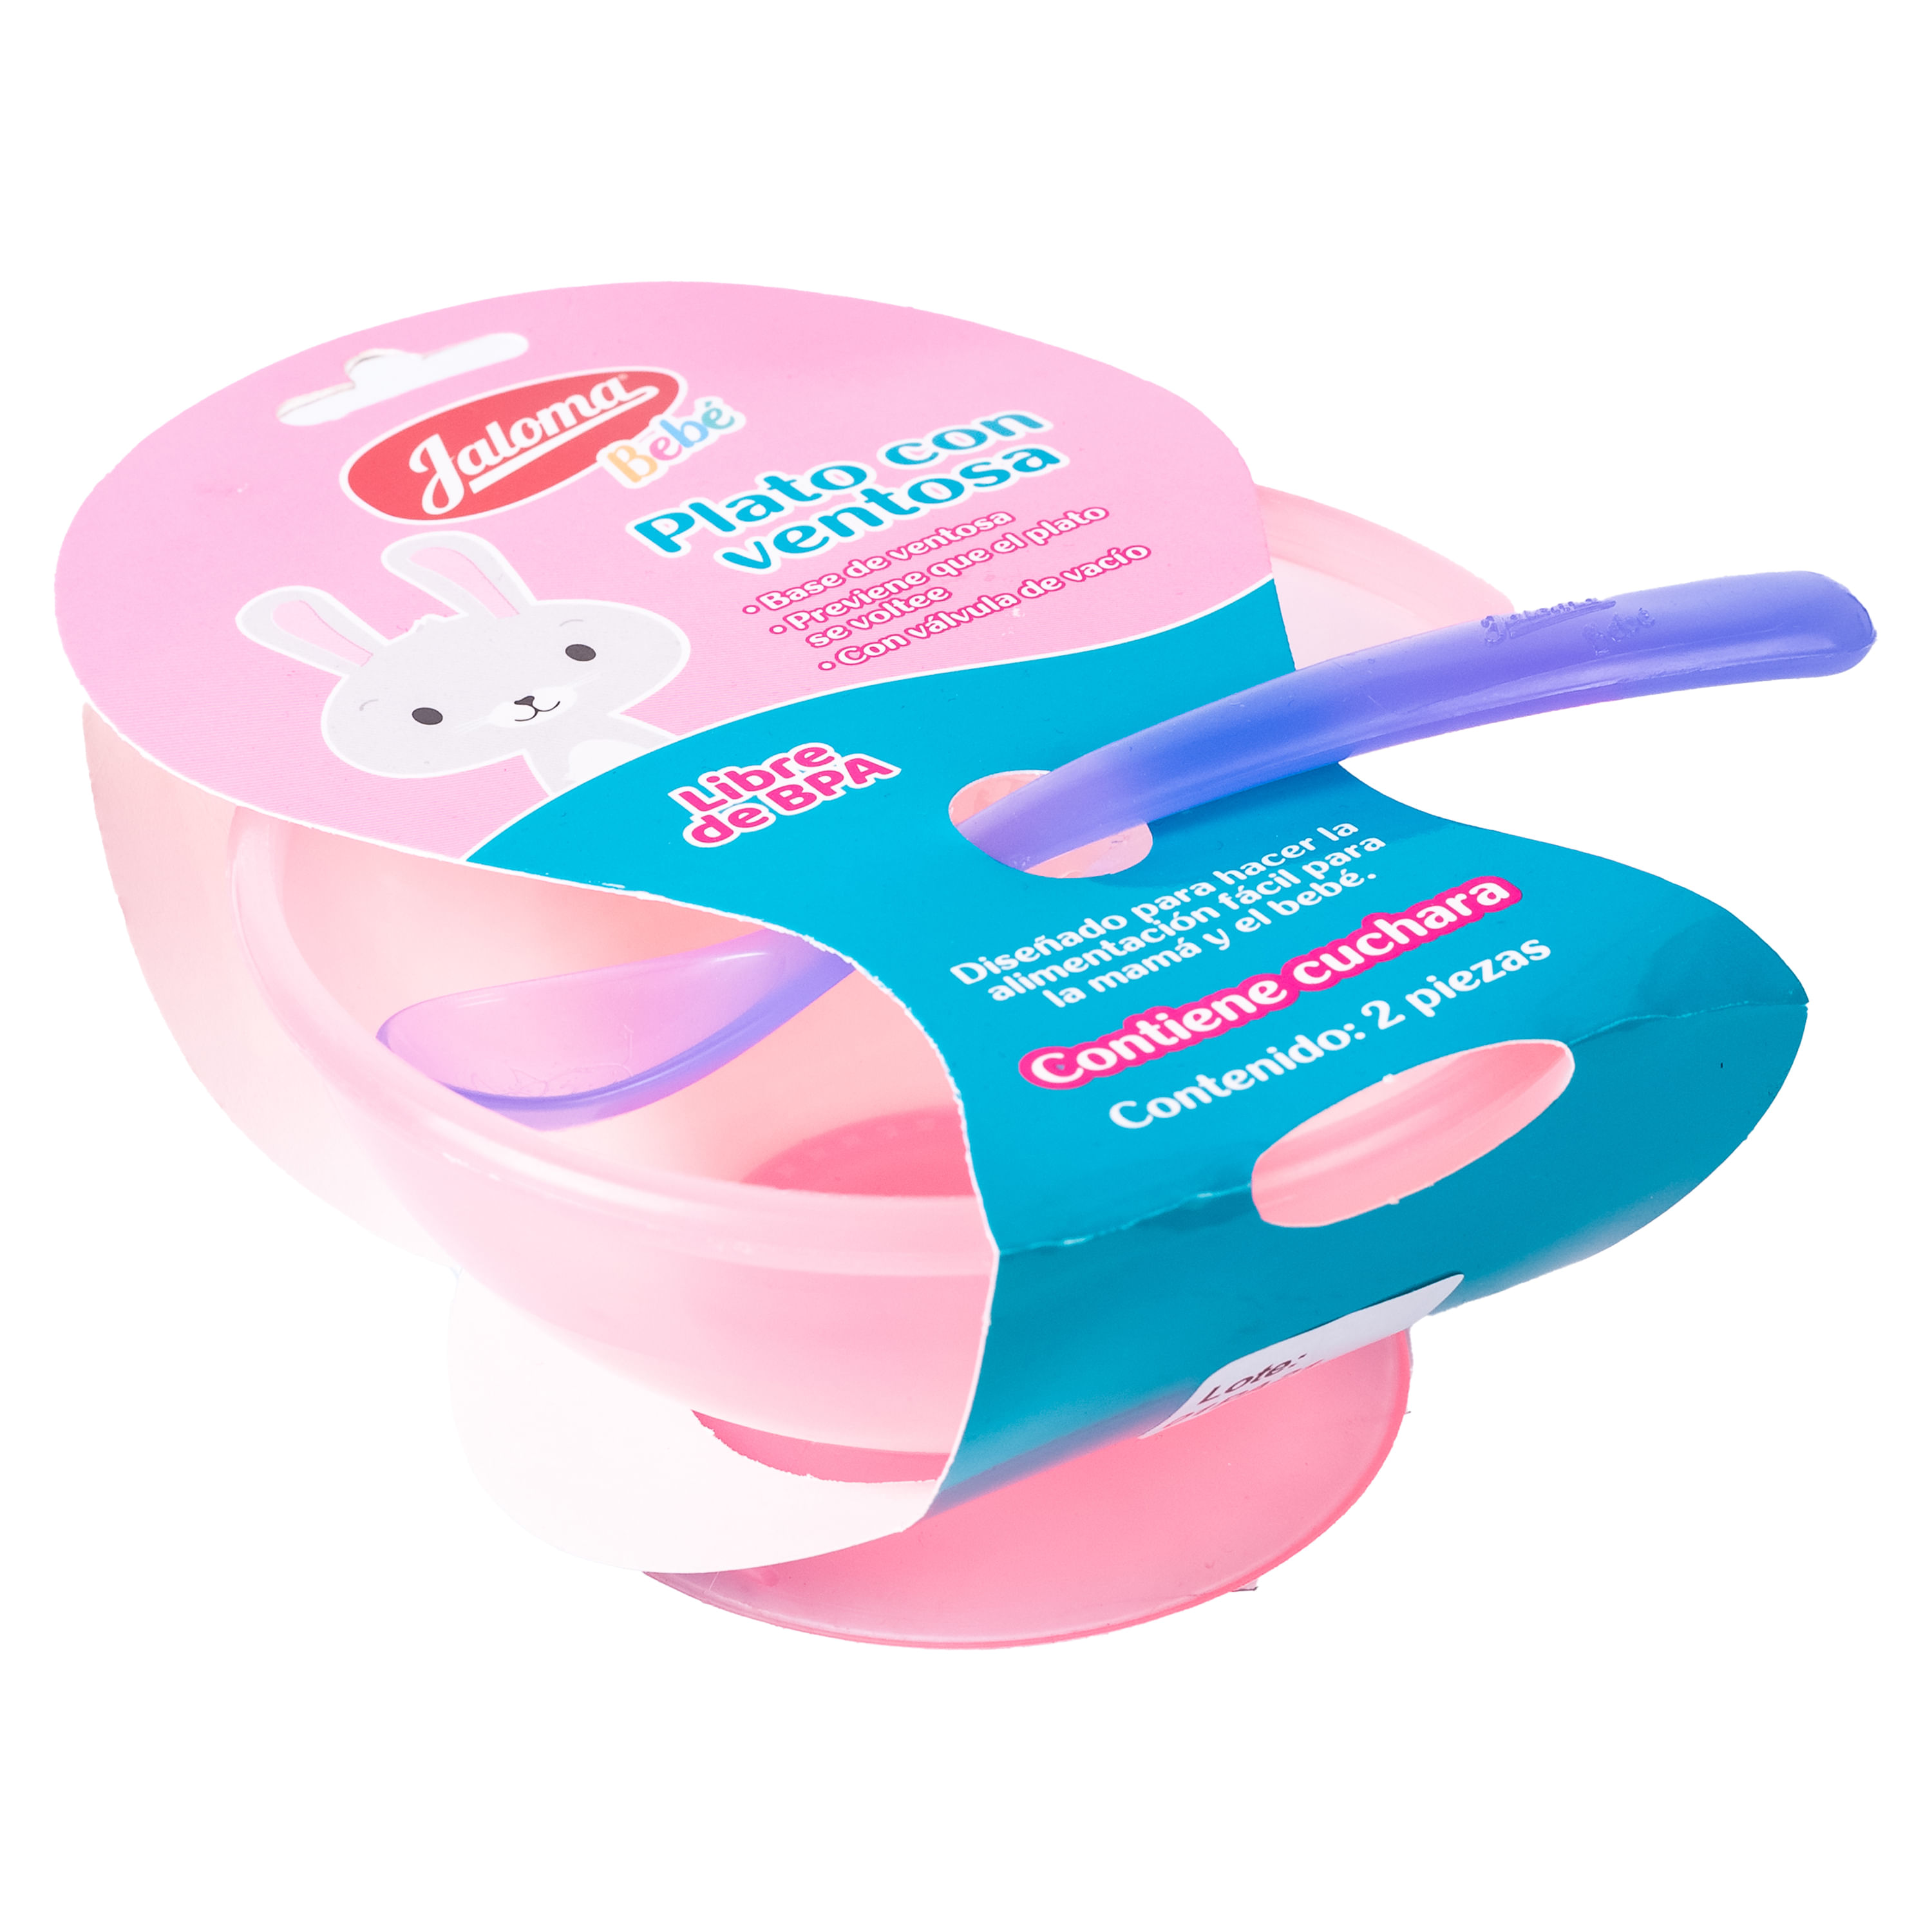 Plato con Ventosa Rosa - Tienda online de accesorios para bebé